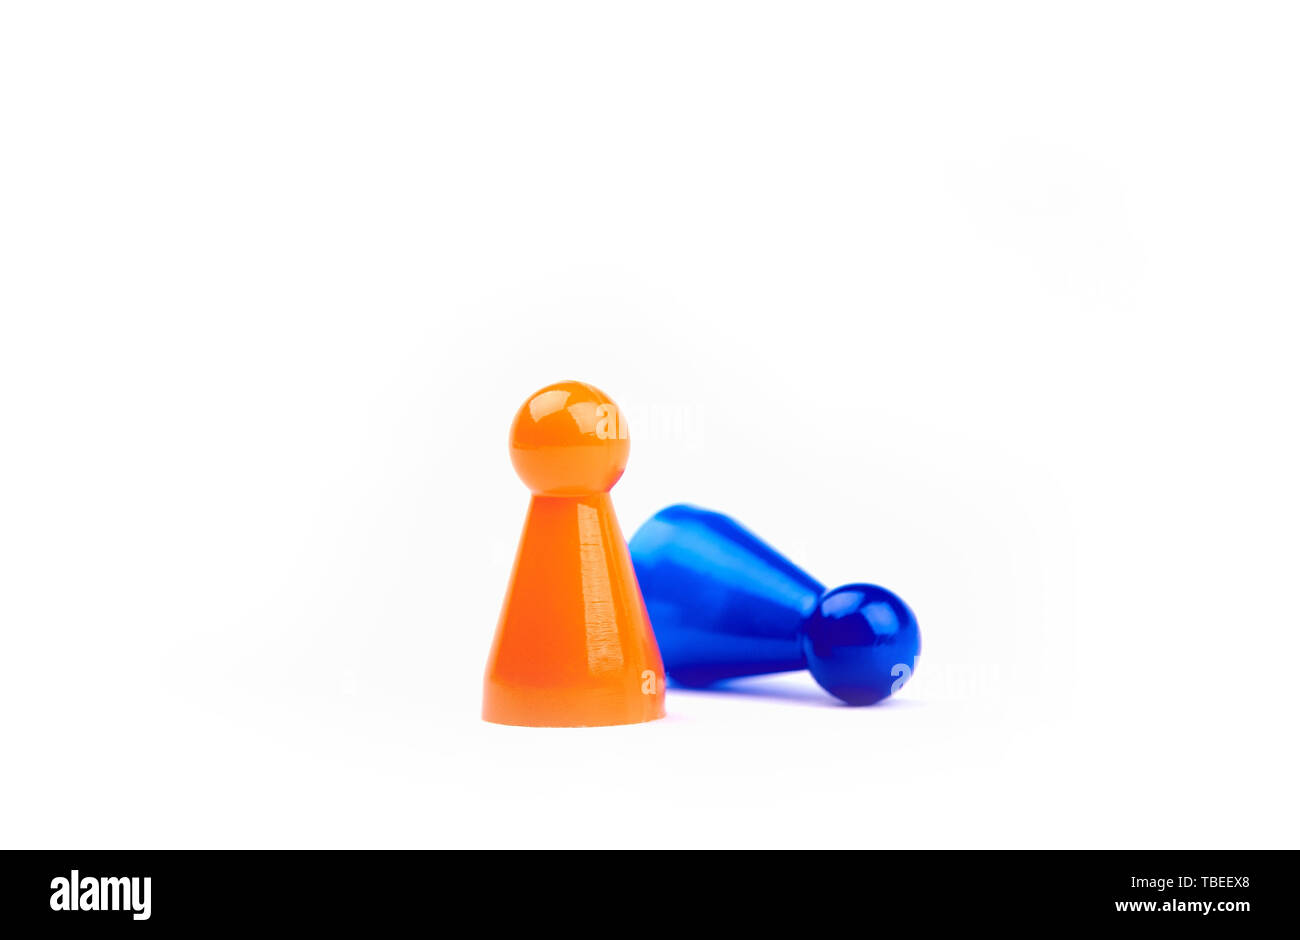 Deux jouets en plastique orange - Figurine jeu gagnant comme permanent et le bleu du prince est comme perdant - Isolé sur fond blanc Banque D'Images